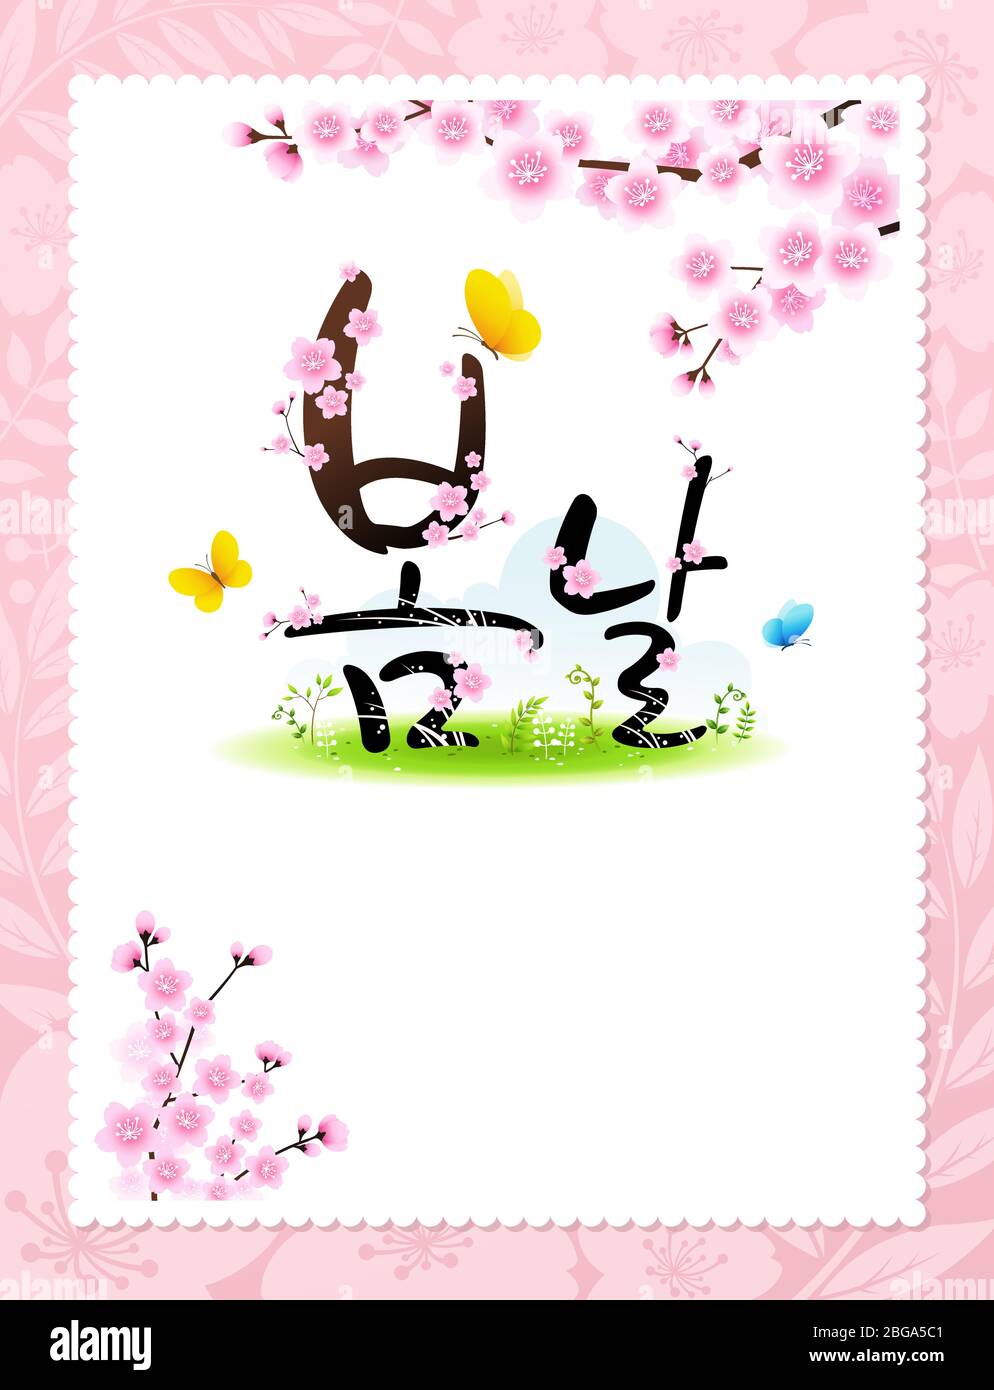 Corée Cherry Blossom Festival, cartes de vœux, bannières et invitations. Printemps, traduction coréenne. Illustration de Vecteur